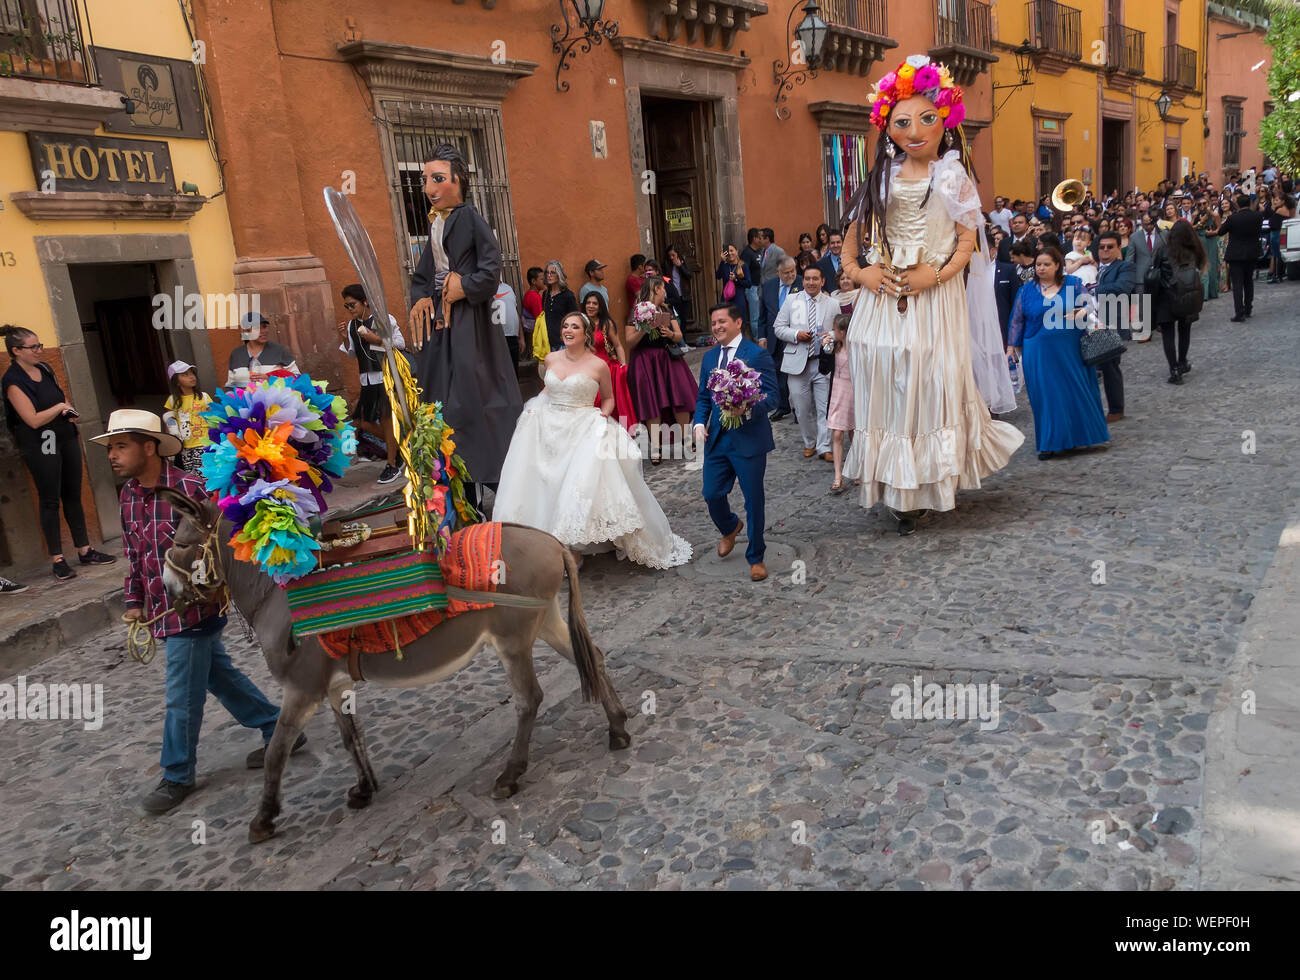 Wedding parade in San Miguel de Allende, Mexico Stock Photo